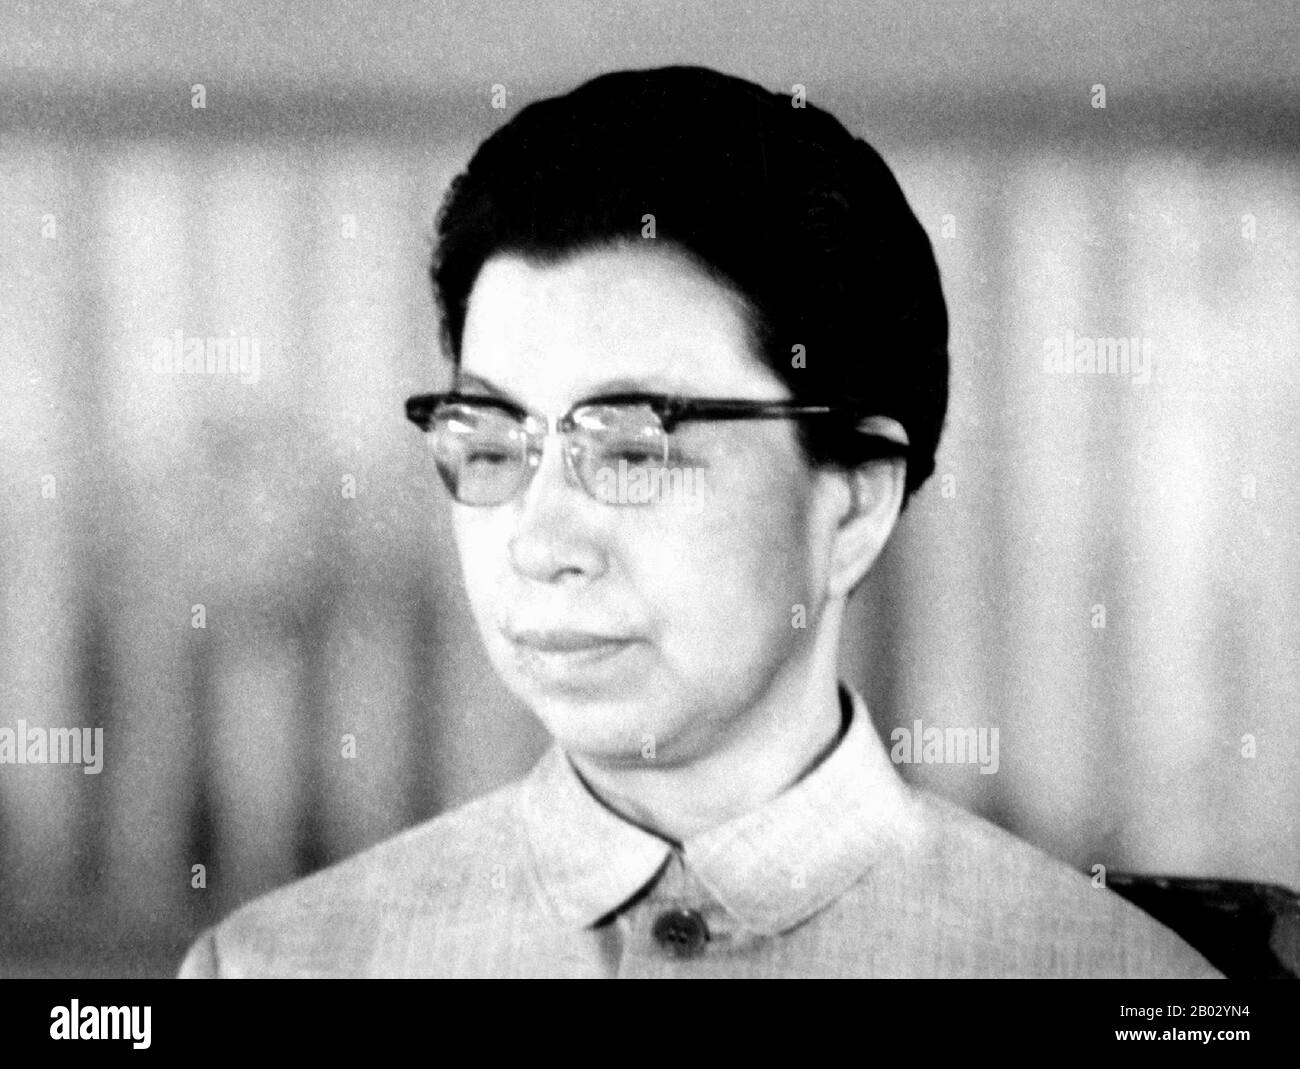 Jiang Qing (Chiang ch'ing, mars 1914 – 14 mai 1991) était le pseudonyme utilisé par la dernière femme du leader chinois Mao Zedong et le principal personnage du parti communiste chinois. Elle est allée par Le nom de scène Lan Ping pendant sa carrière intérimaire, et a été connue par divers autres noms pendant sa vie. Elle a épousé Mao à Yan en novembre 1938, et est parfois appelée Madame Mao dans la littérature occidentale, servant de première dame de la Chine communiste. Jiang Qing était plus connu pour avoir joué un rôle majeur dans la Révolution culturelle (1966–1976) et pour former l'alliance politique radicale connue sous le nom de Banque D'Images